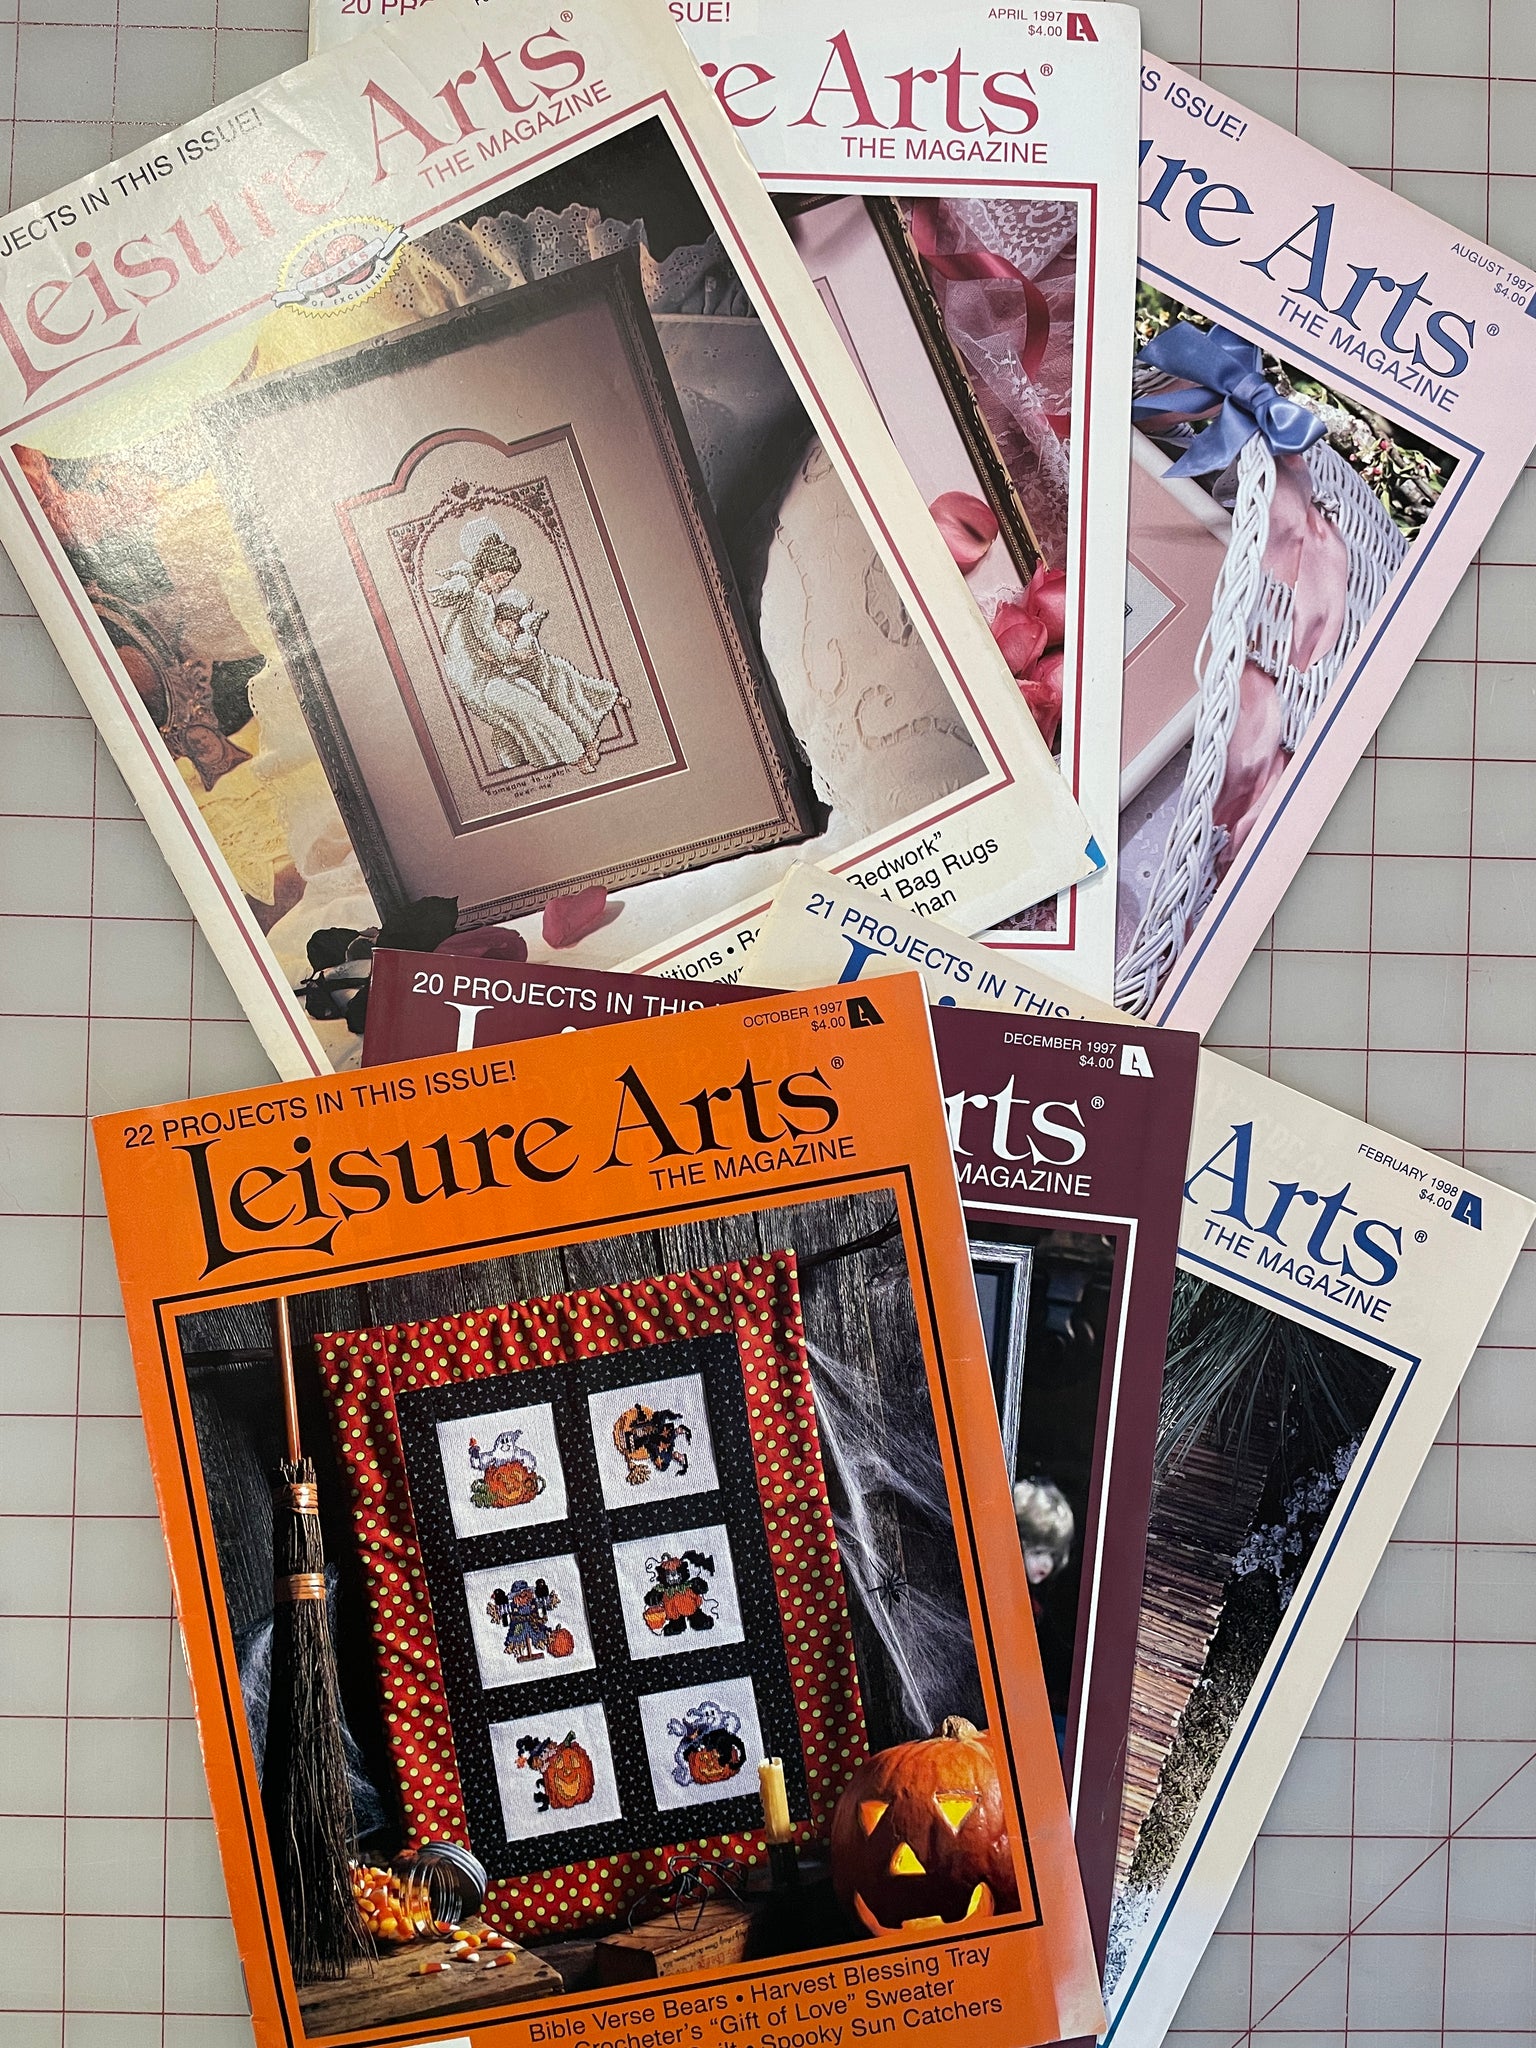 SALE Vintage "Leisure Arts" Magazine Bundle -  6 Issues